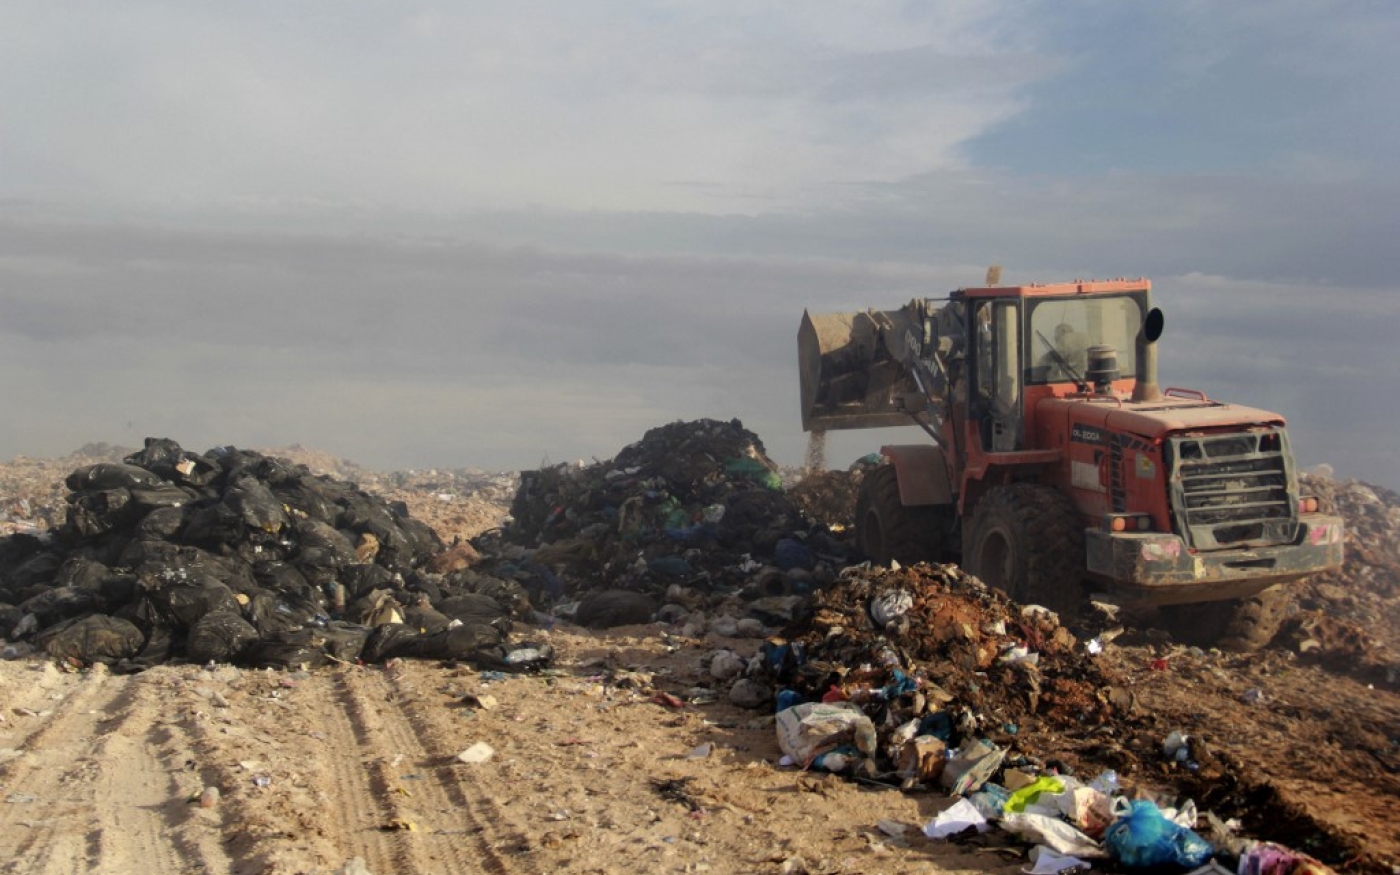 Un tracteur enterre des ordures après la réouverture d’une décharge à Agareb, le 9 novembre 2021 (AFP/Houssem Zouari)